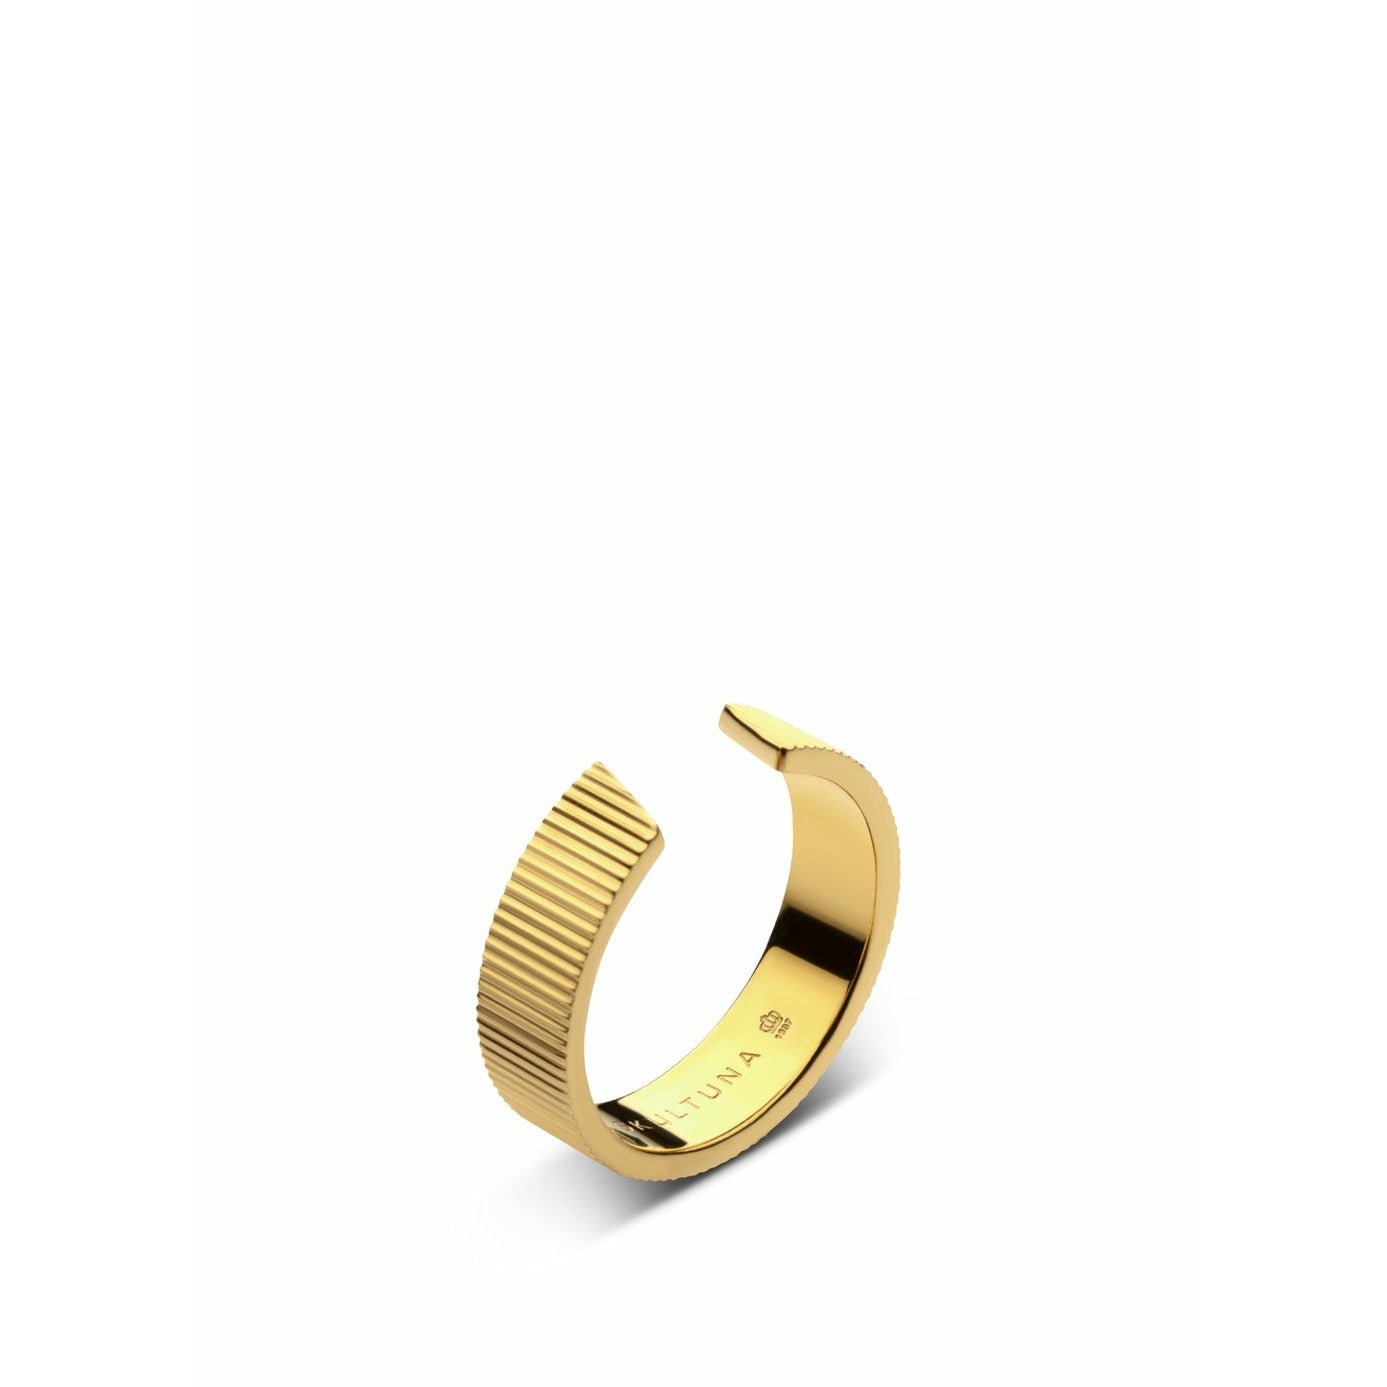 Skultuna Ribbed ringbrett litet guldpläterat 316L stål, Ø1,6 cm